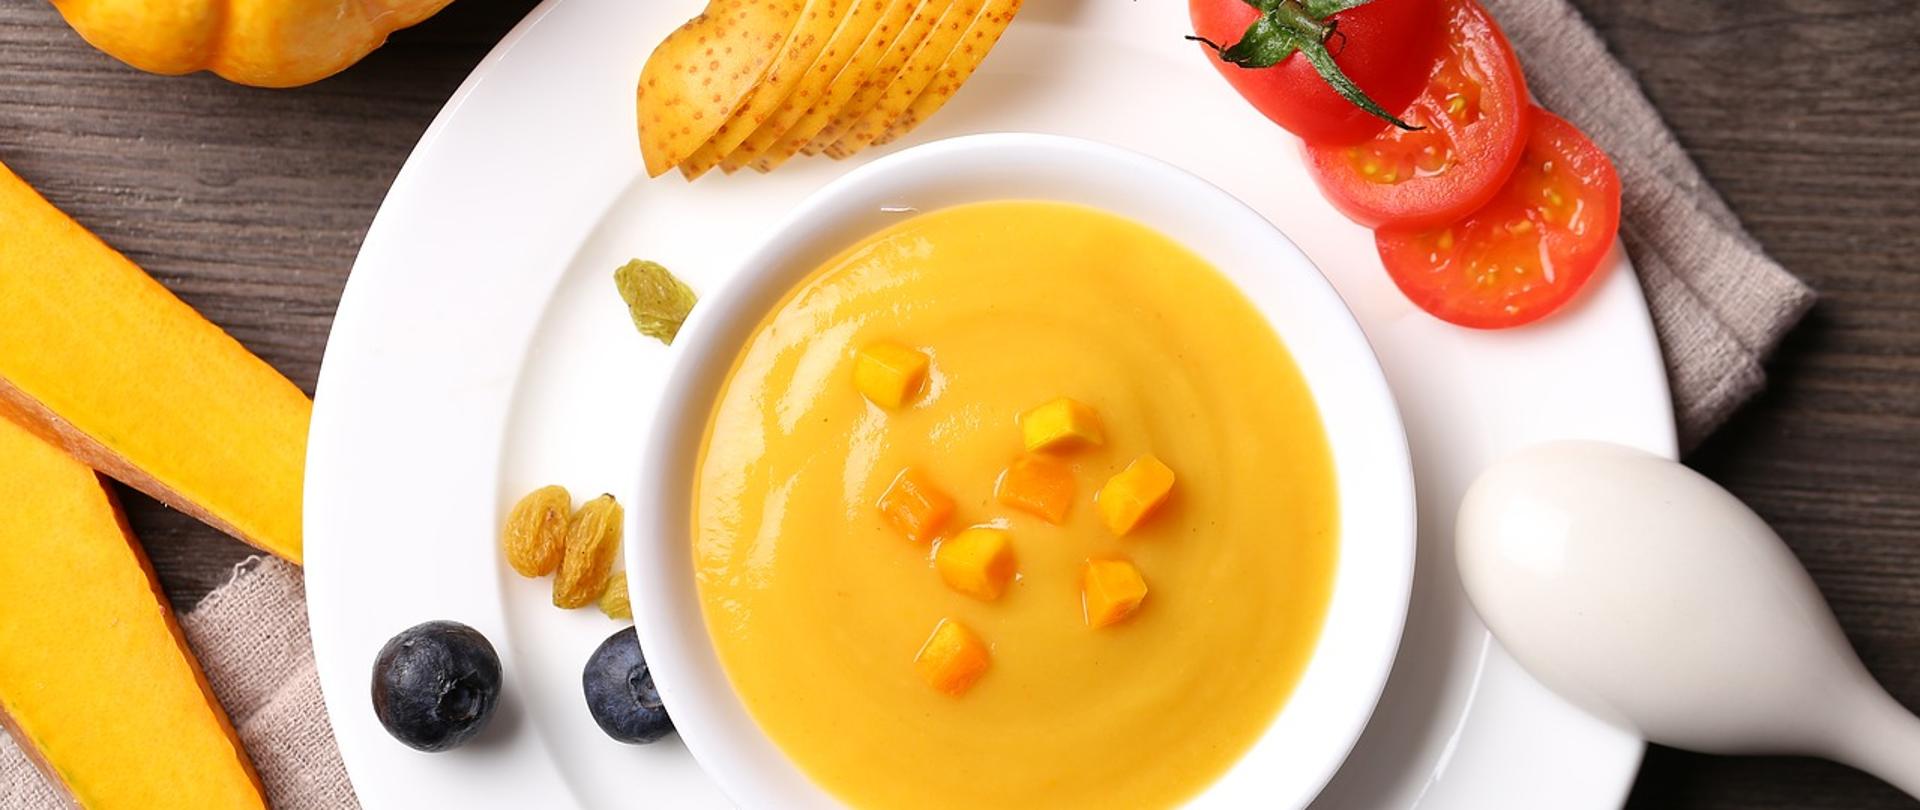 Zdjęcie przedstawia talerz z zupą i warzywami